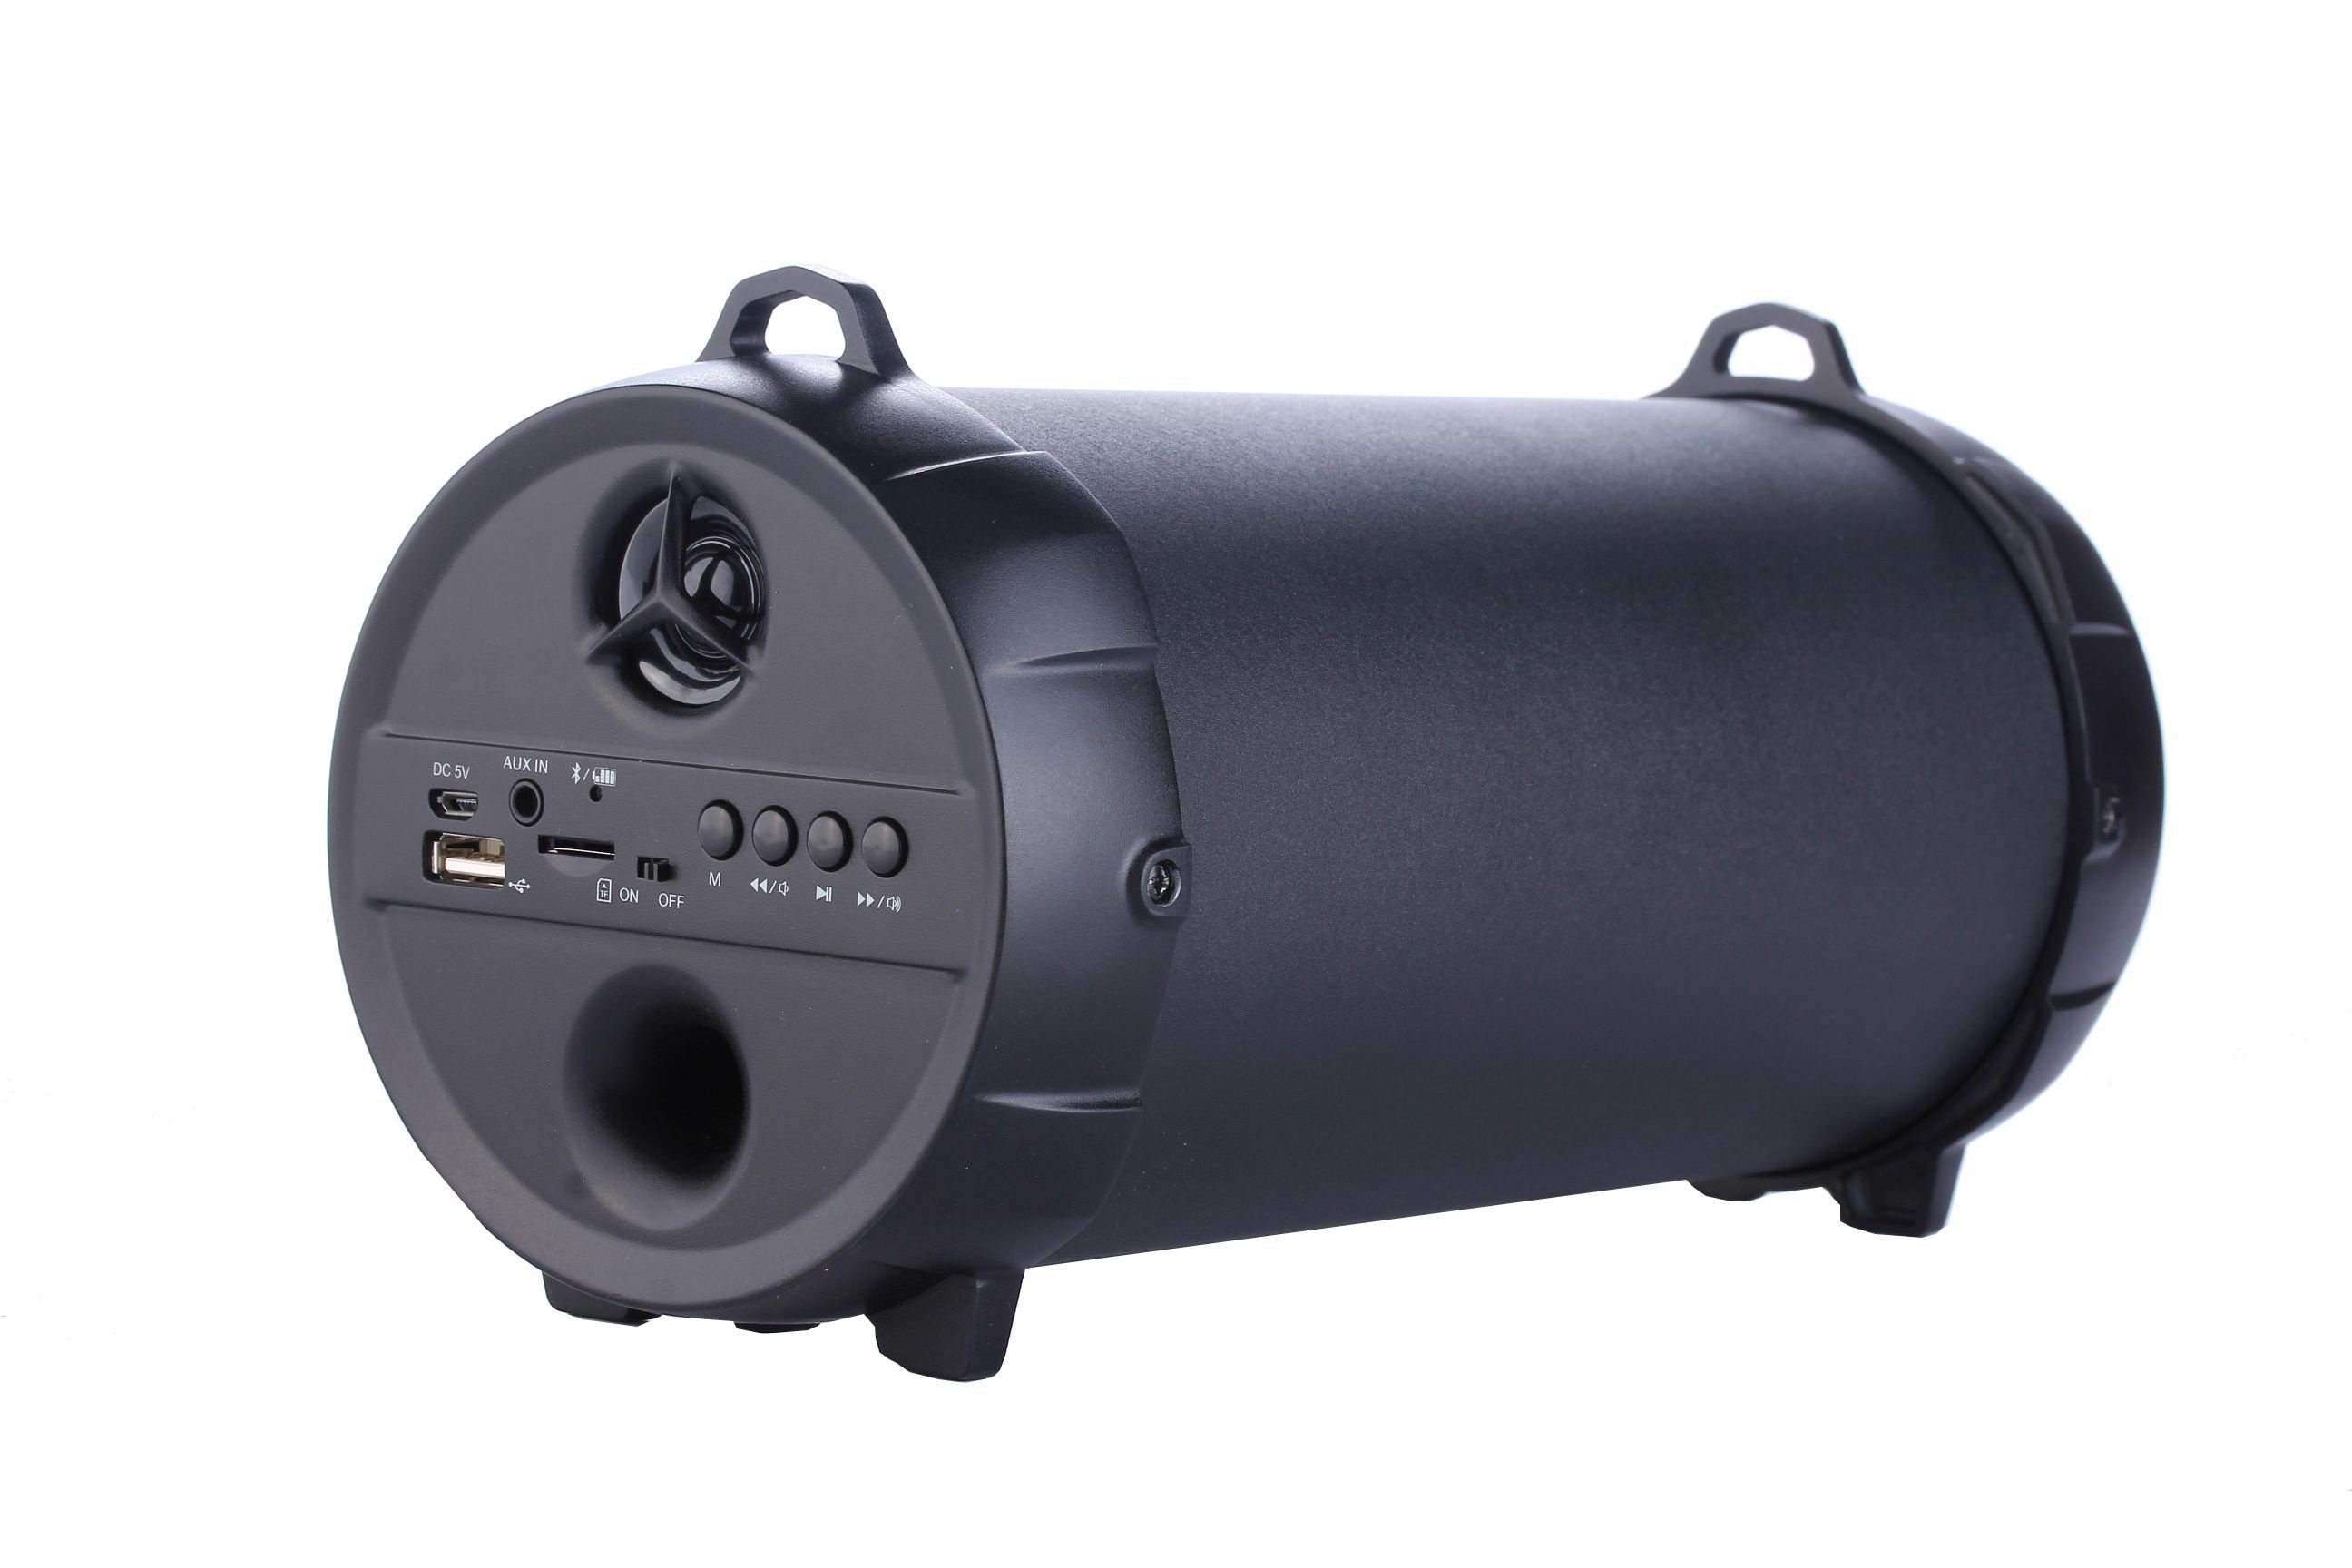 Soundbox Denver Sound Portable-Lautsprecher Soundbox kabellose BTS-53 mit aufladbaren Akku) Bluetooth (10 Lautsprecher Bluetooth Box schwarz W, Bassbox